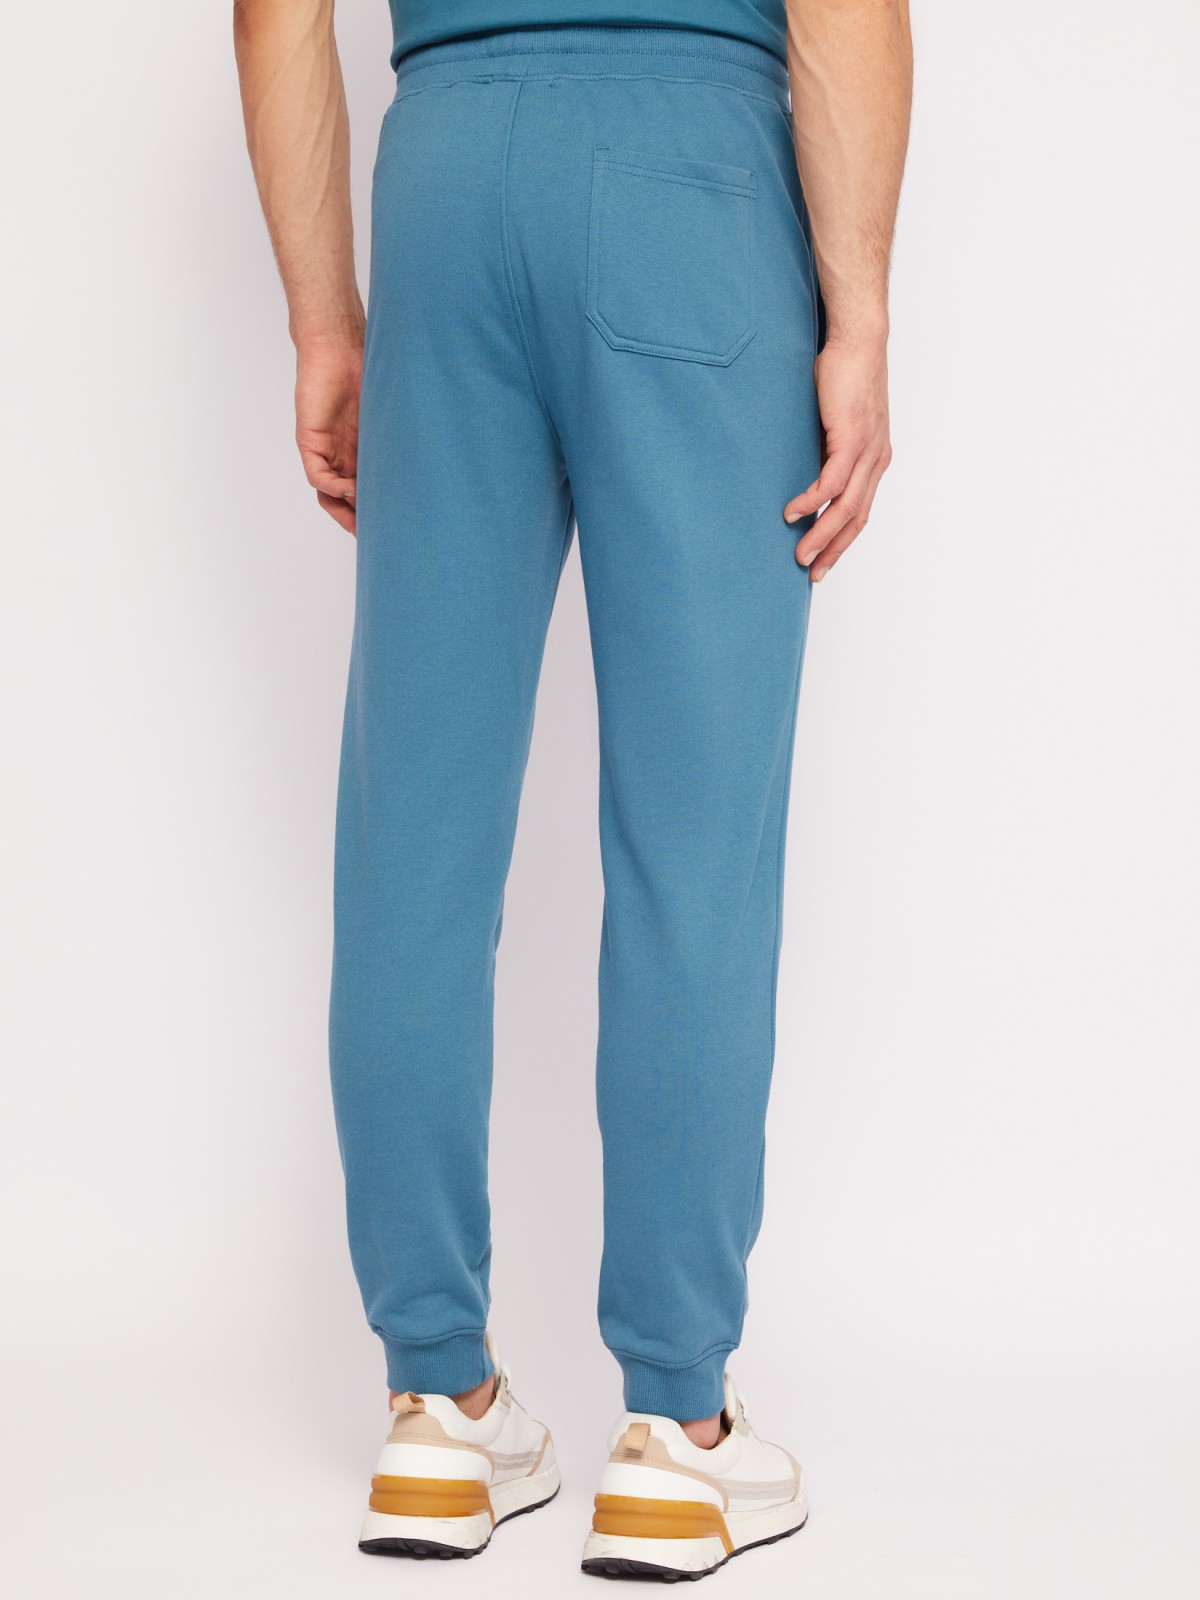 Трикотажные брюки-джоггеры в спортивном стиле zolla 014217675012, цвет бирюзовый, размер S - фото 5